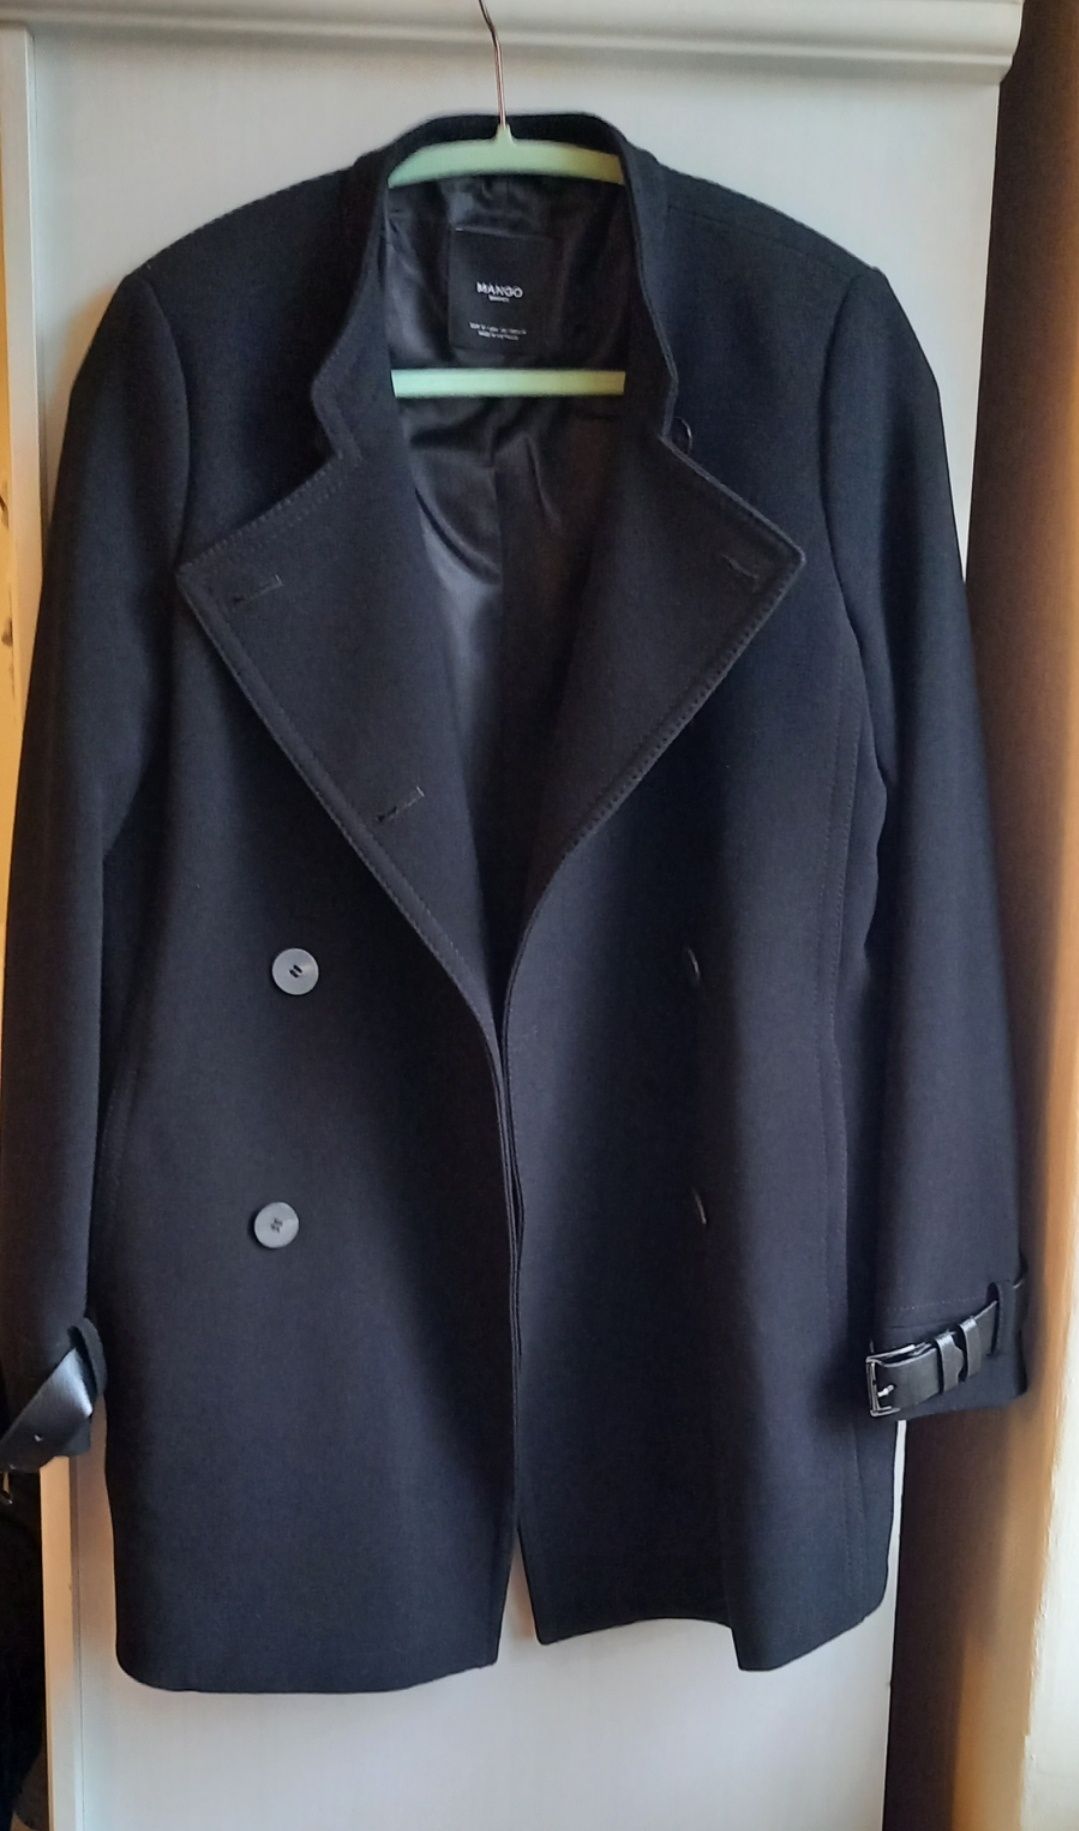 Płaszcz wiosenny Mohito, S, czarny, używany